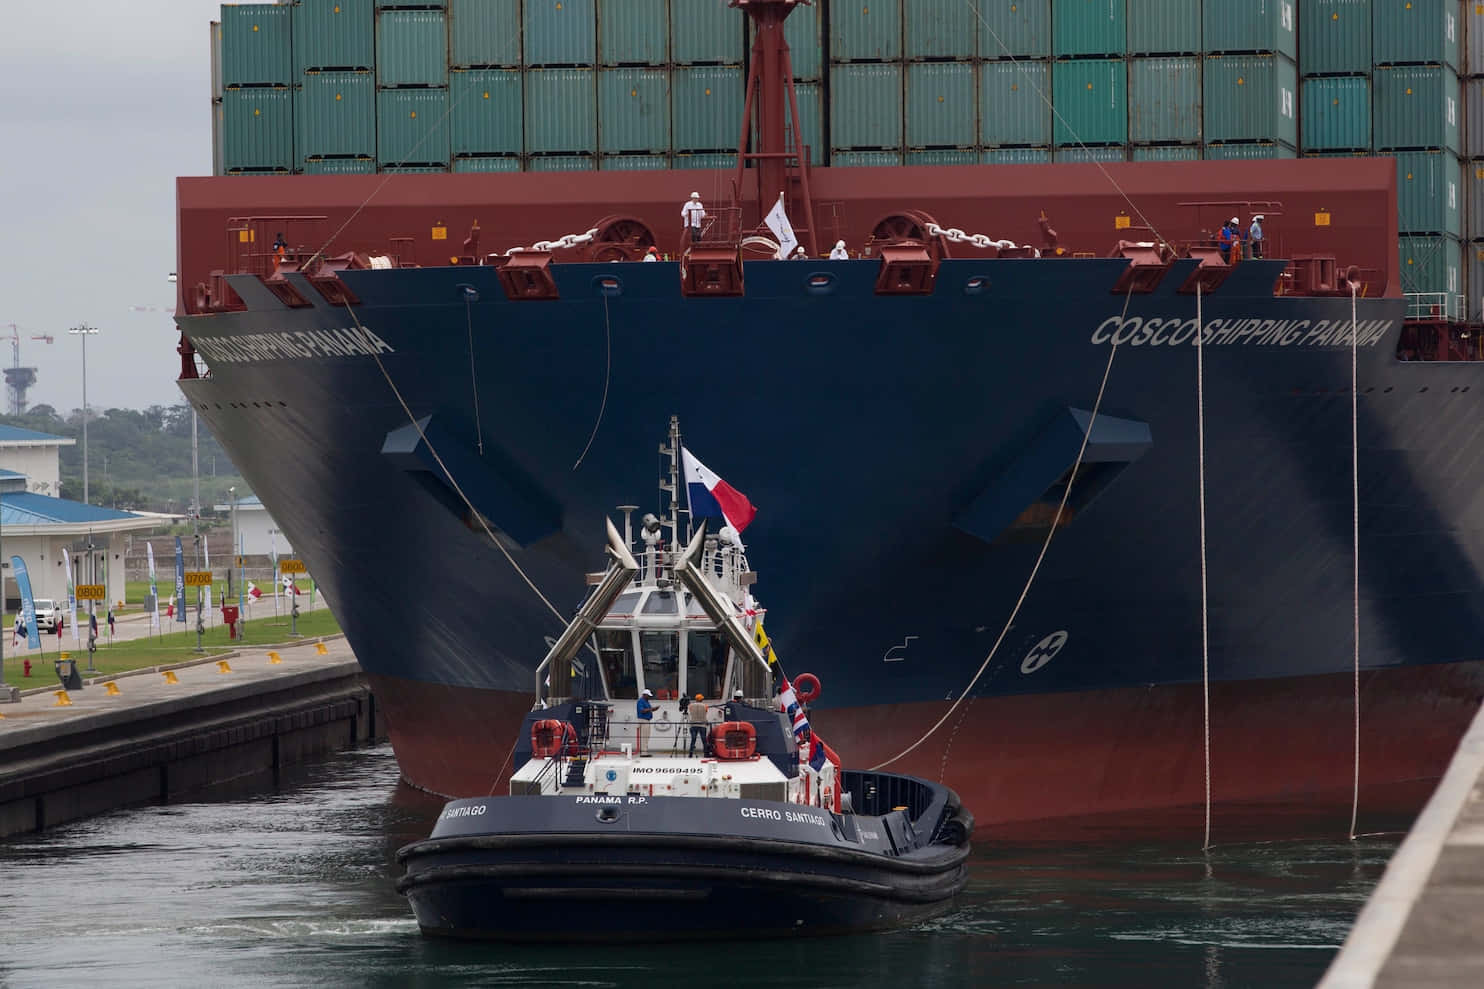 Stortsvart Containerfartyg På Väg Mot Panamakanalen. Wallpaper